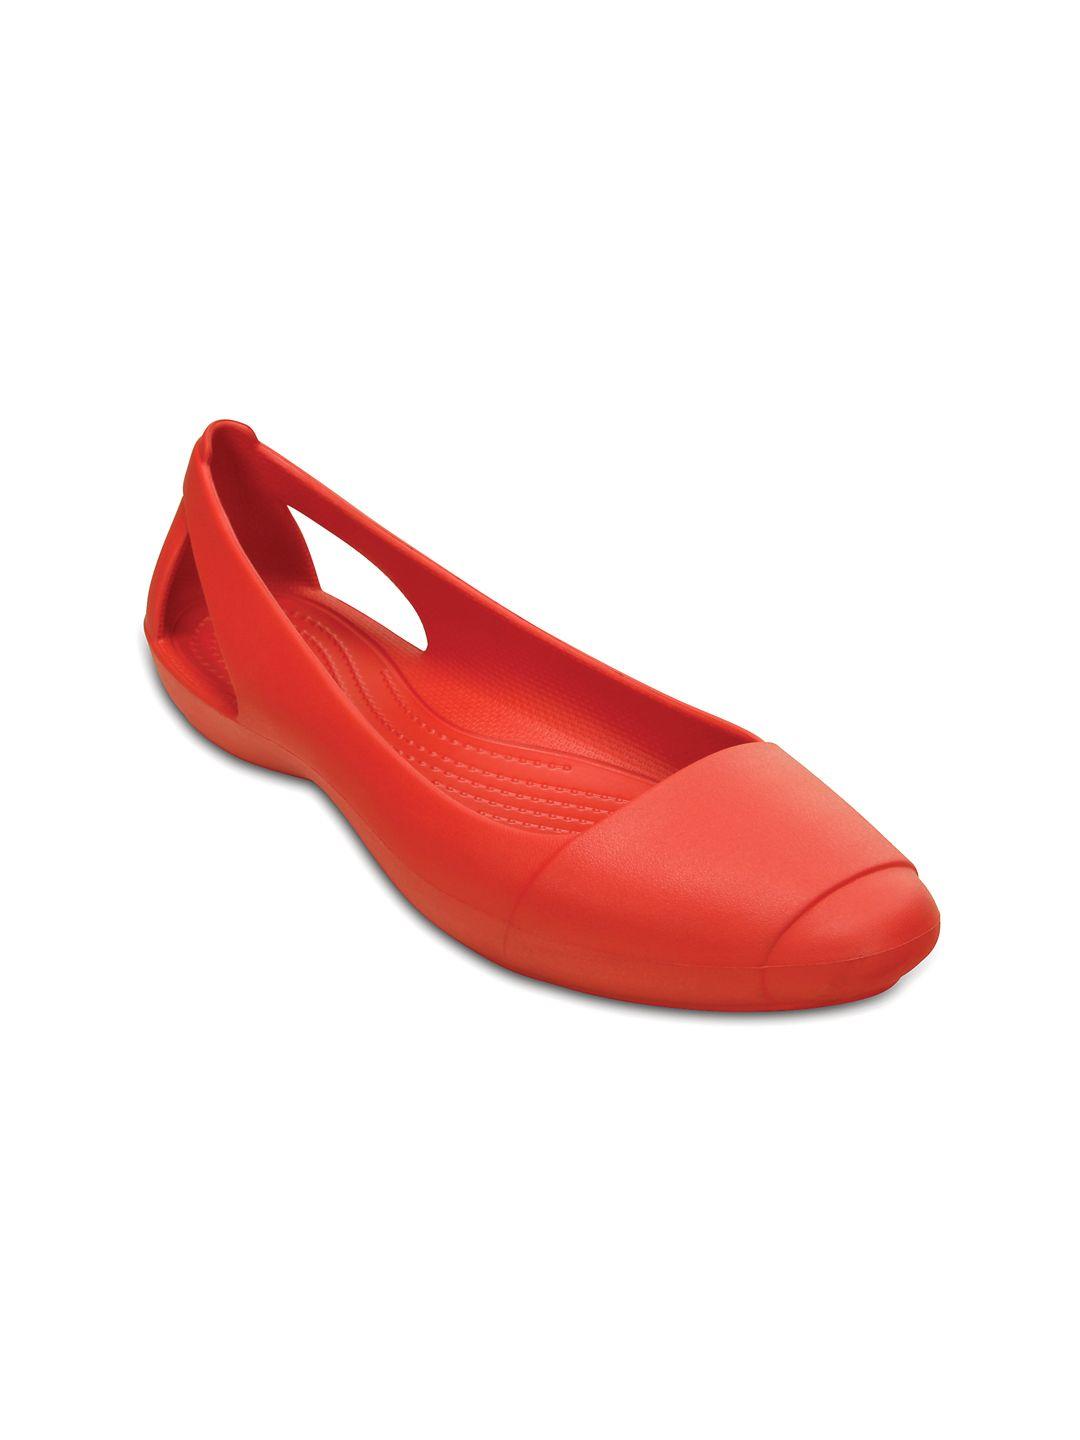 crocs-sienna--women-red-ballerinas